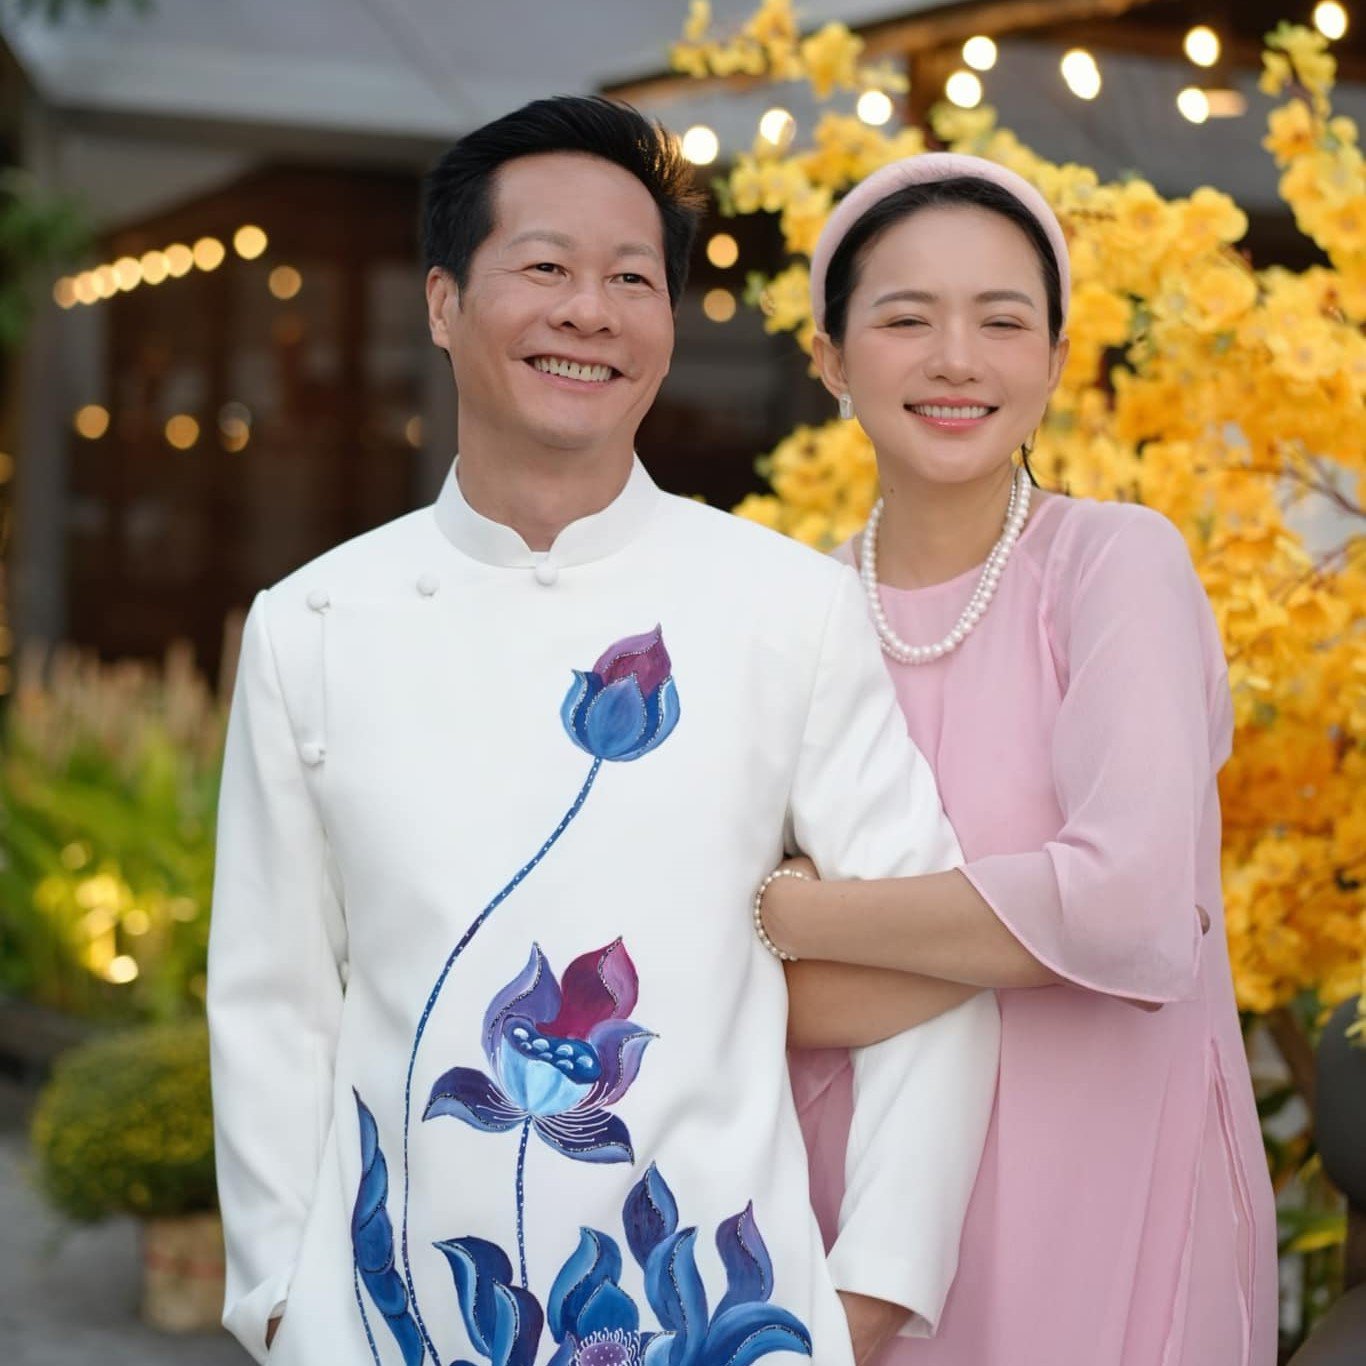 Phan Như Thảo đang có cuộc sống hạnh phúc bên chồng, gần như rời bỏ showbiz Việt.